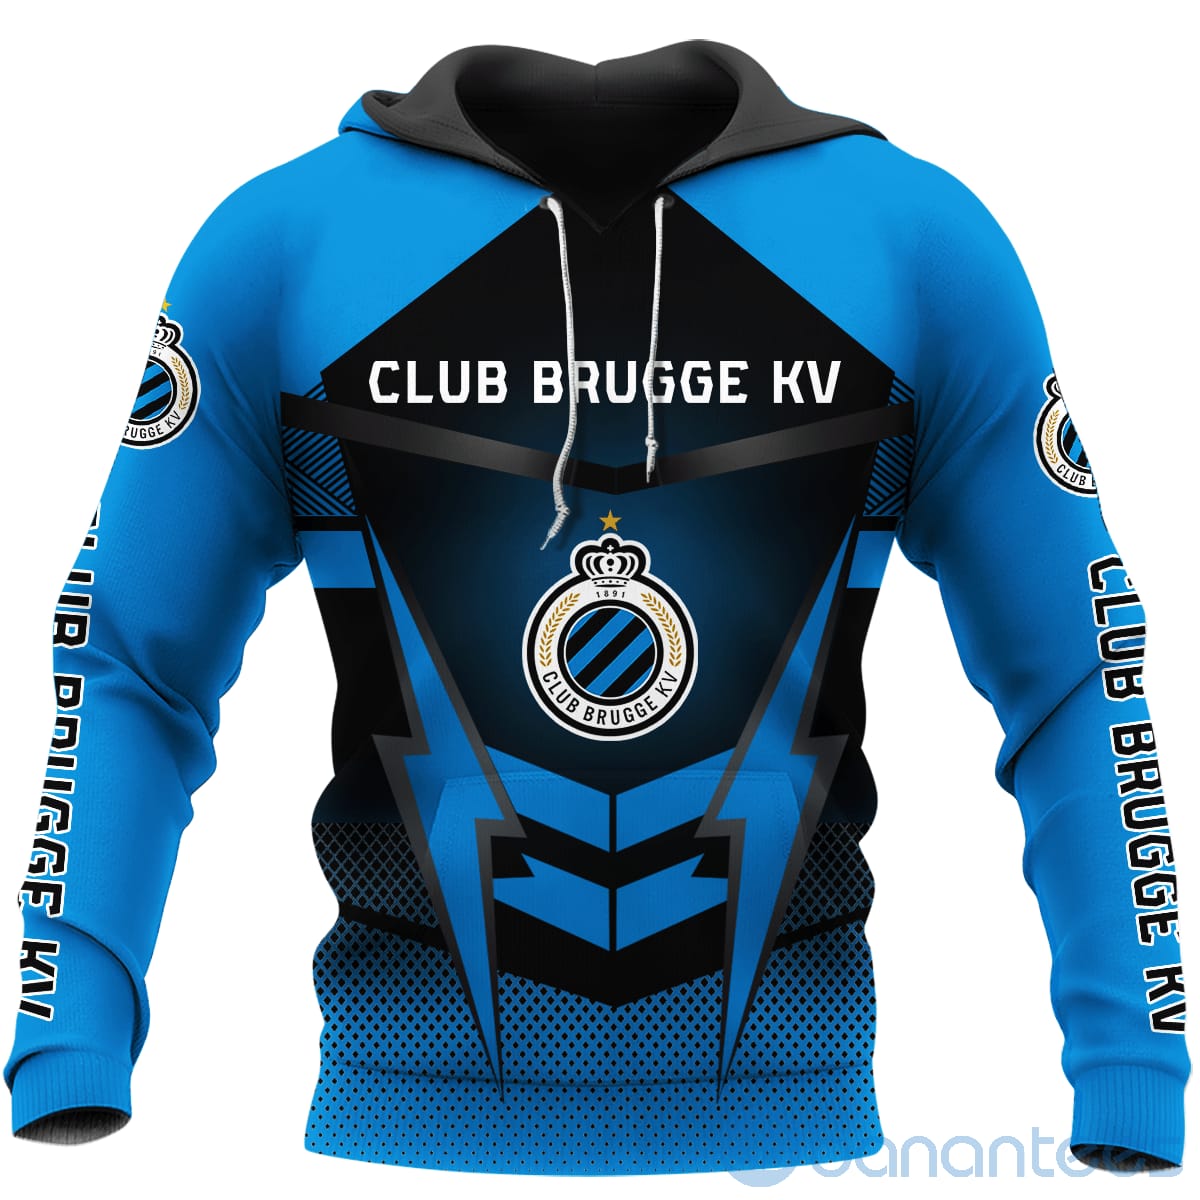 Club Brugge Team All Over Printed Hoodies Zip Hoodies